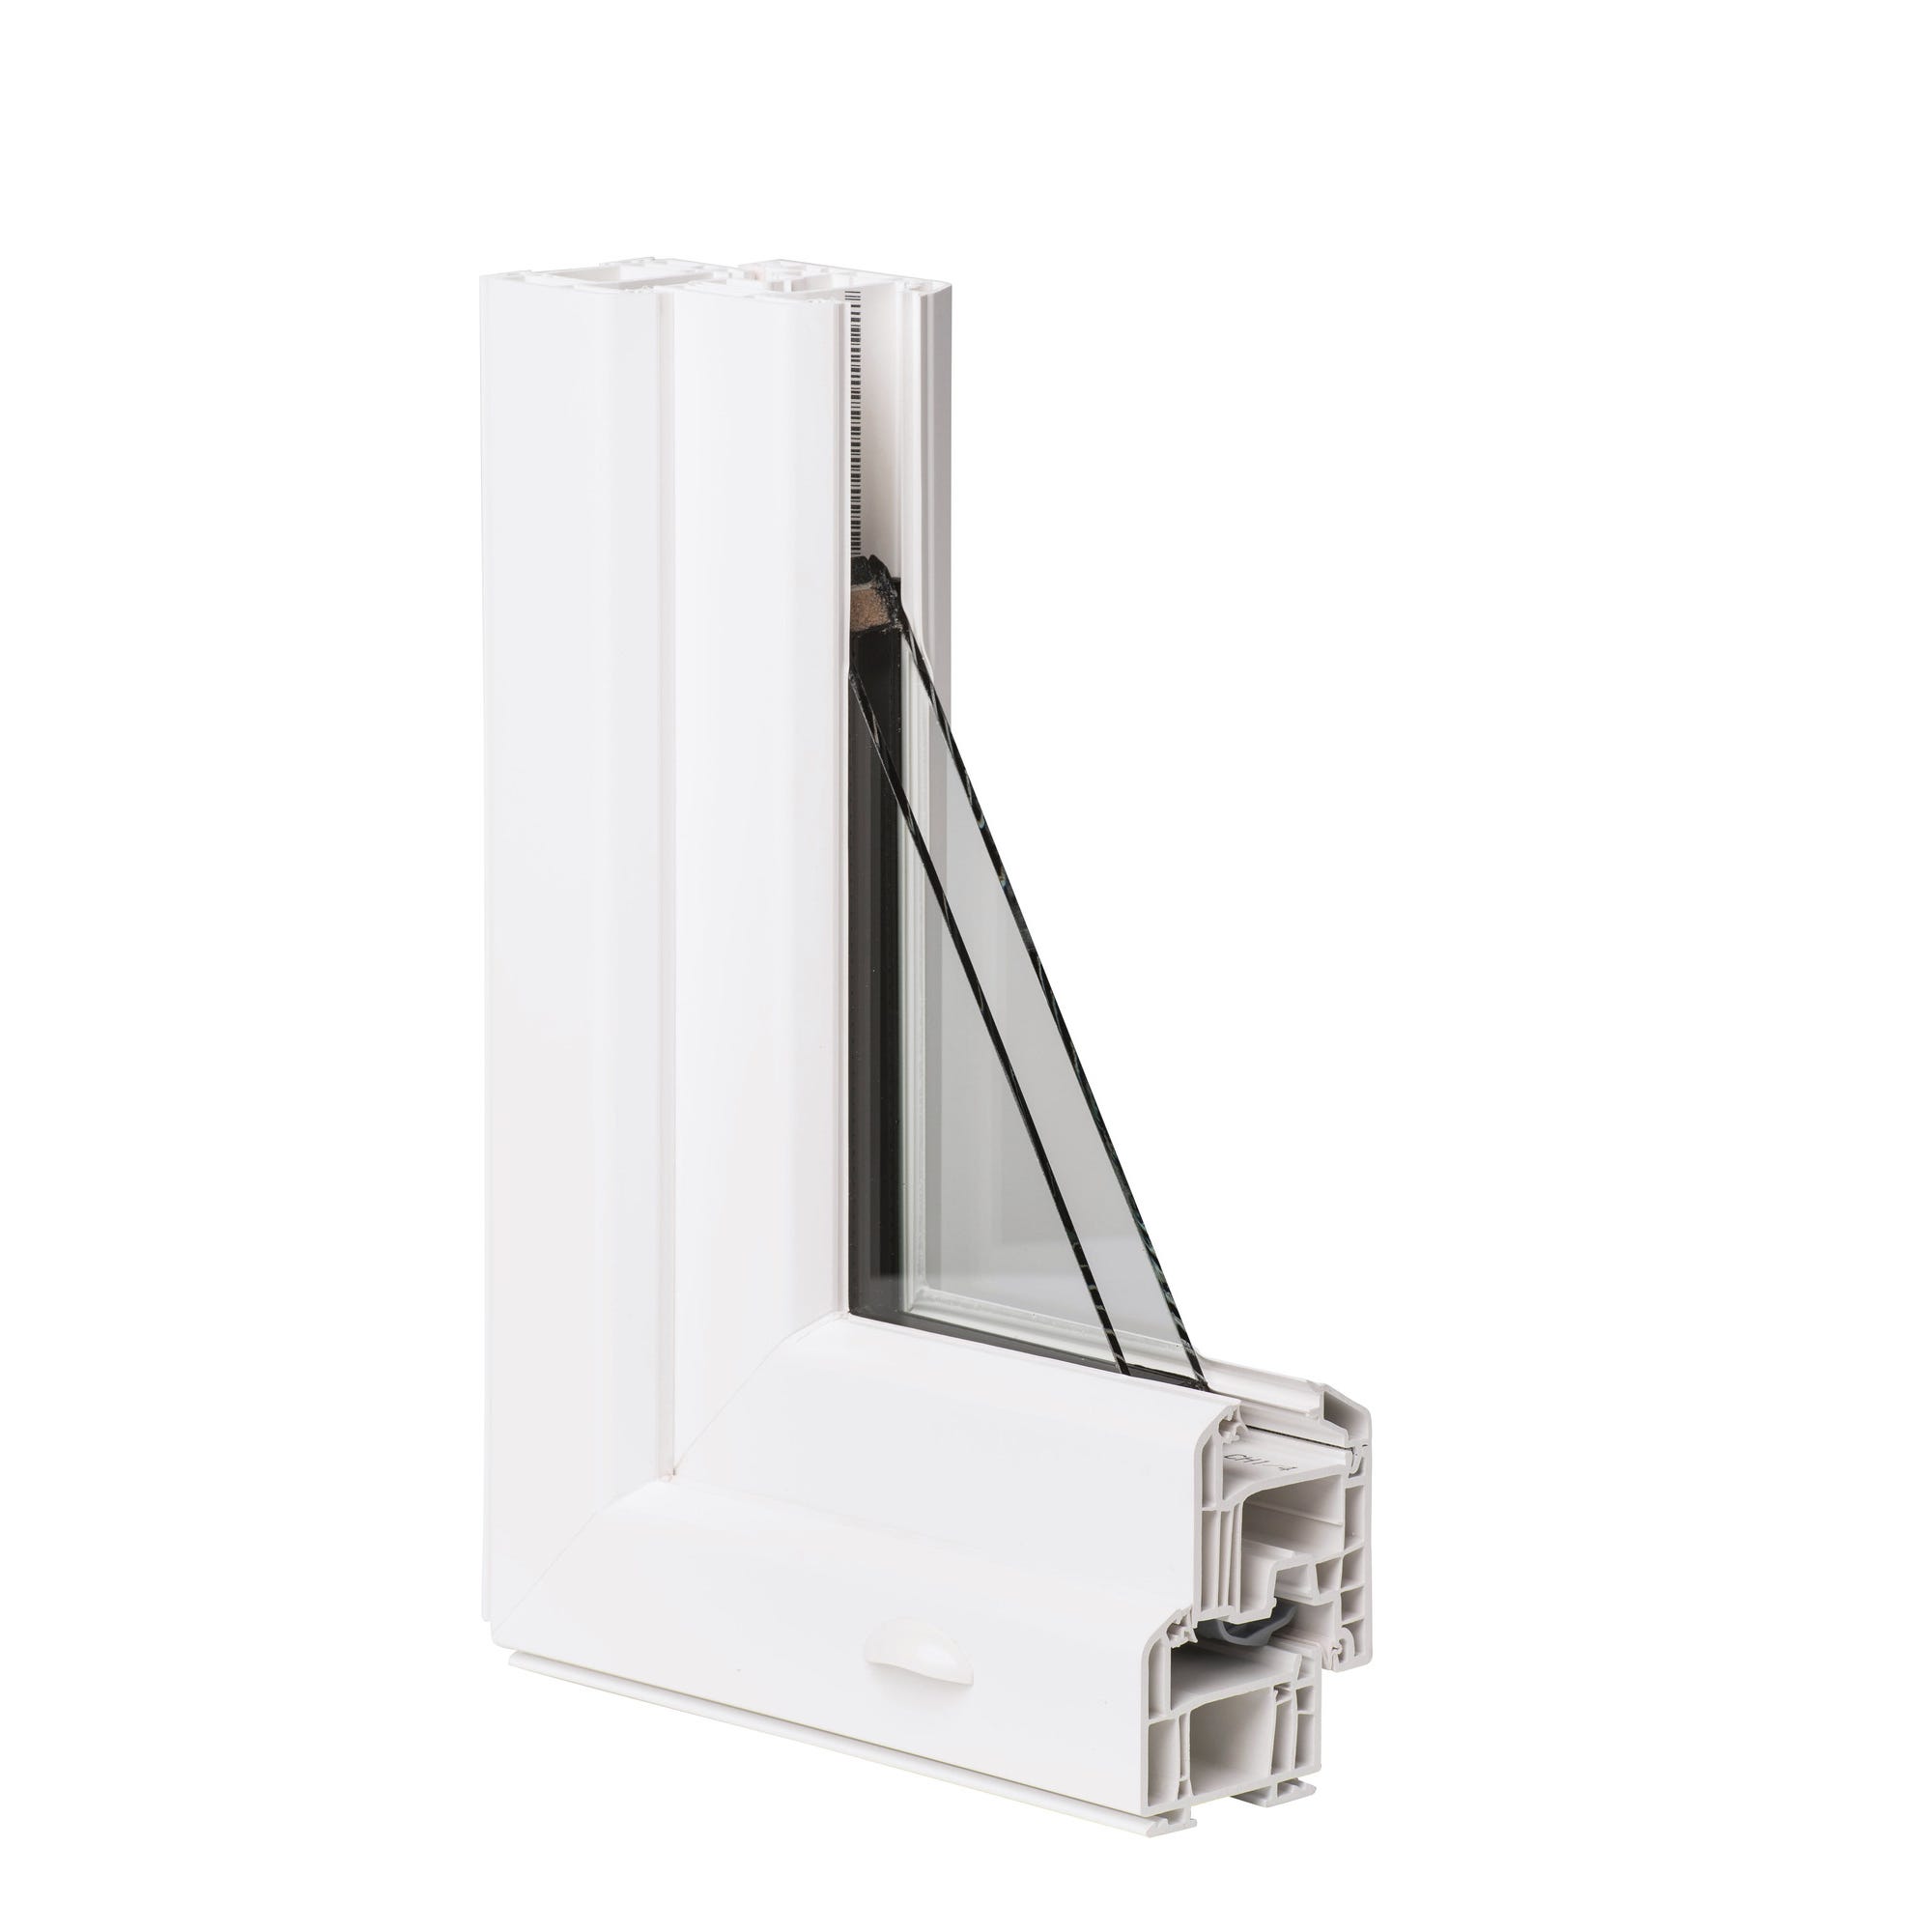 Fenêtre PVC H.165 x l.100 cm oscillo-battant 2 vantaux blanc 2